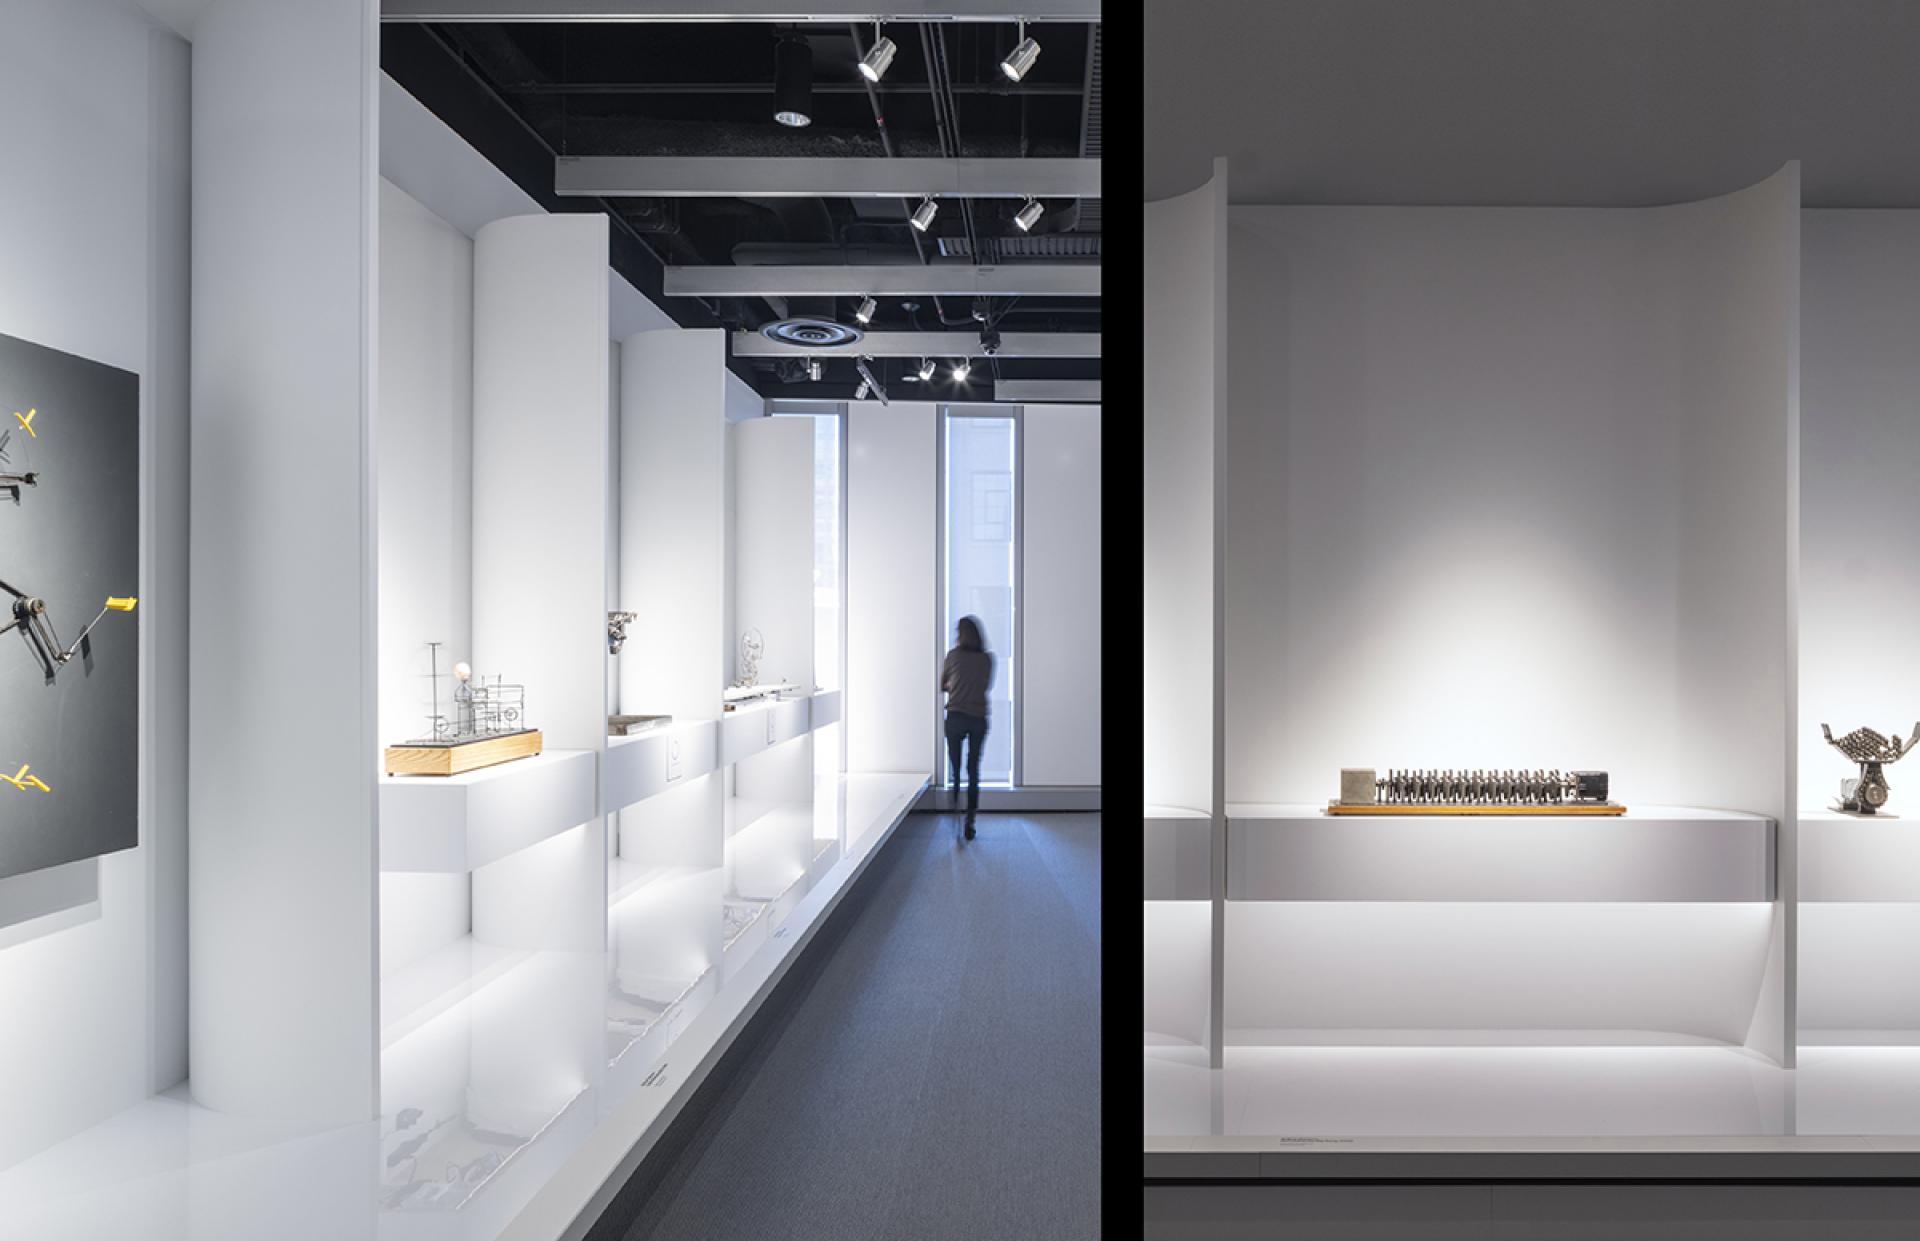 MUSE Design Awards | Exhibits, Pavilions & Exhibitions MIT Museum Exhibitio